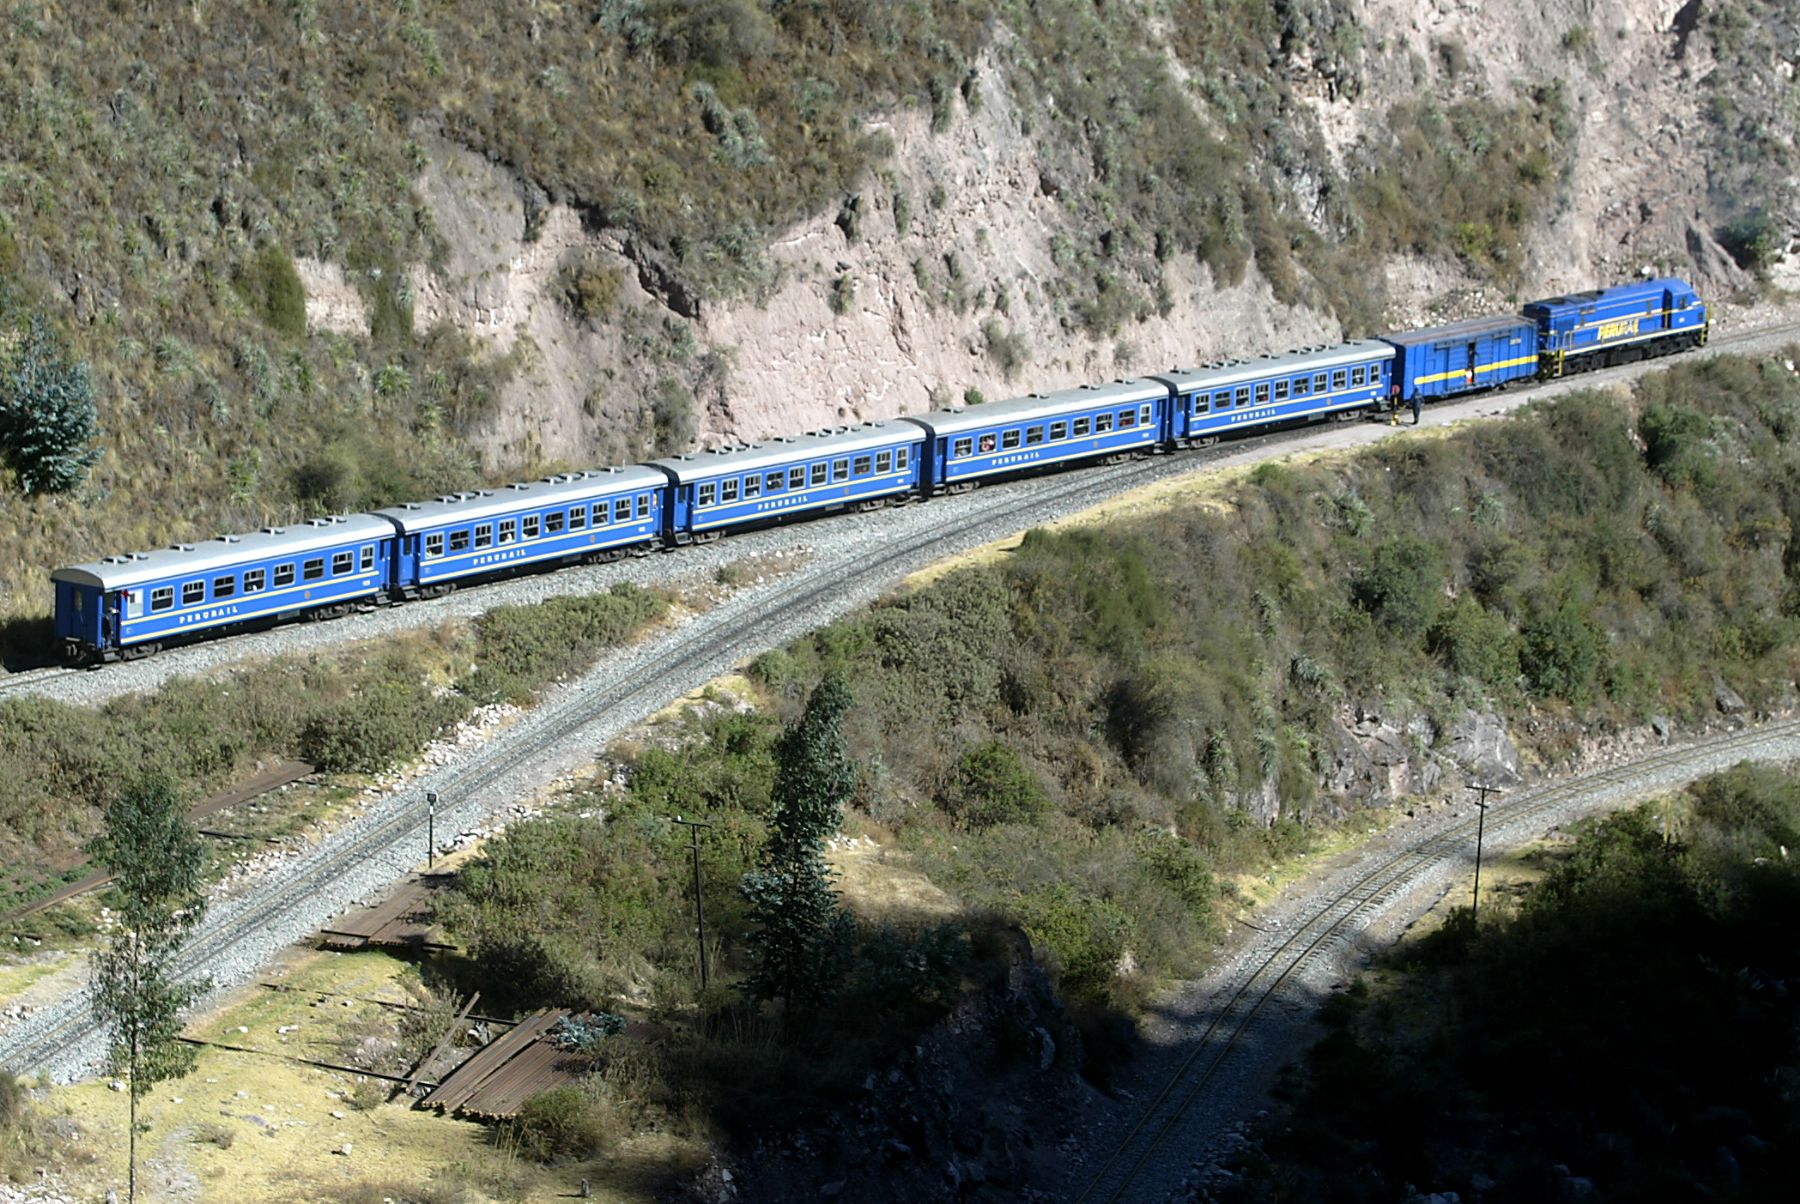 Las operaciones ferroviarias en el tramo Cusco-Puno, del ferrocarril del sur, continuarán suspendidas por las protestas que persisten en algunas zonas de la ruta. Foto: ANDINA/archivo